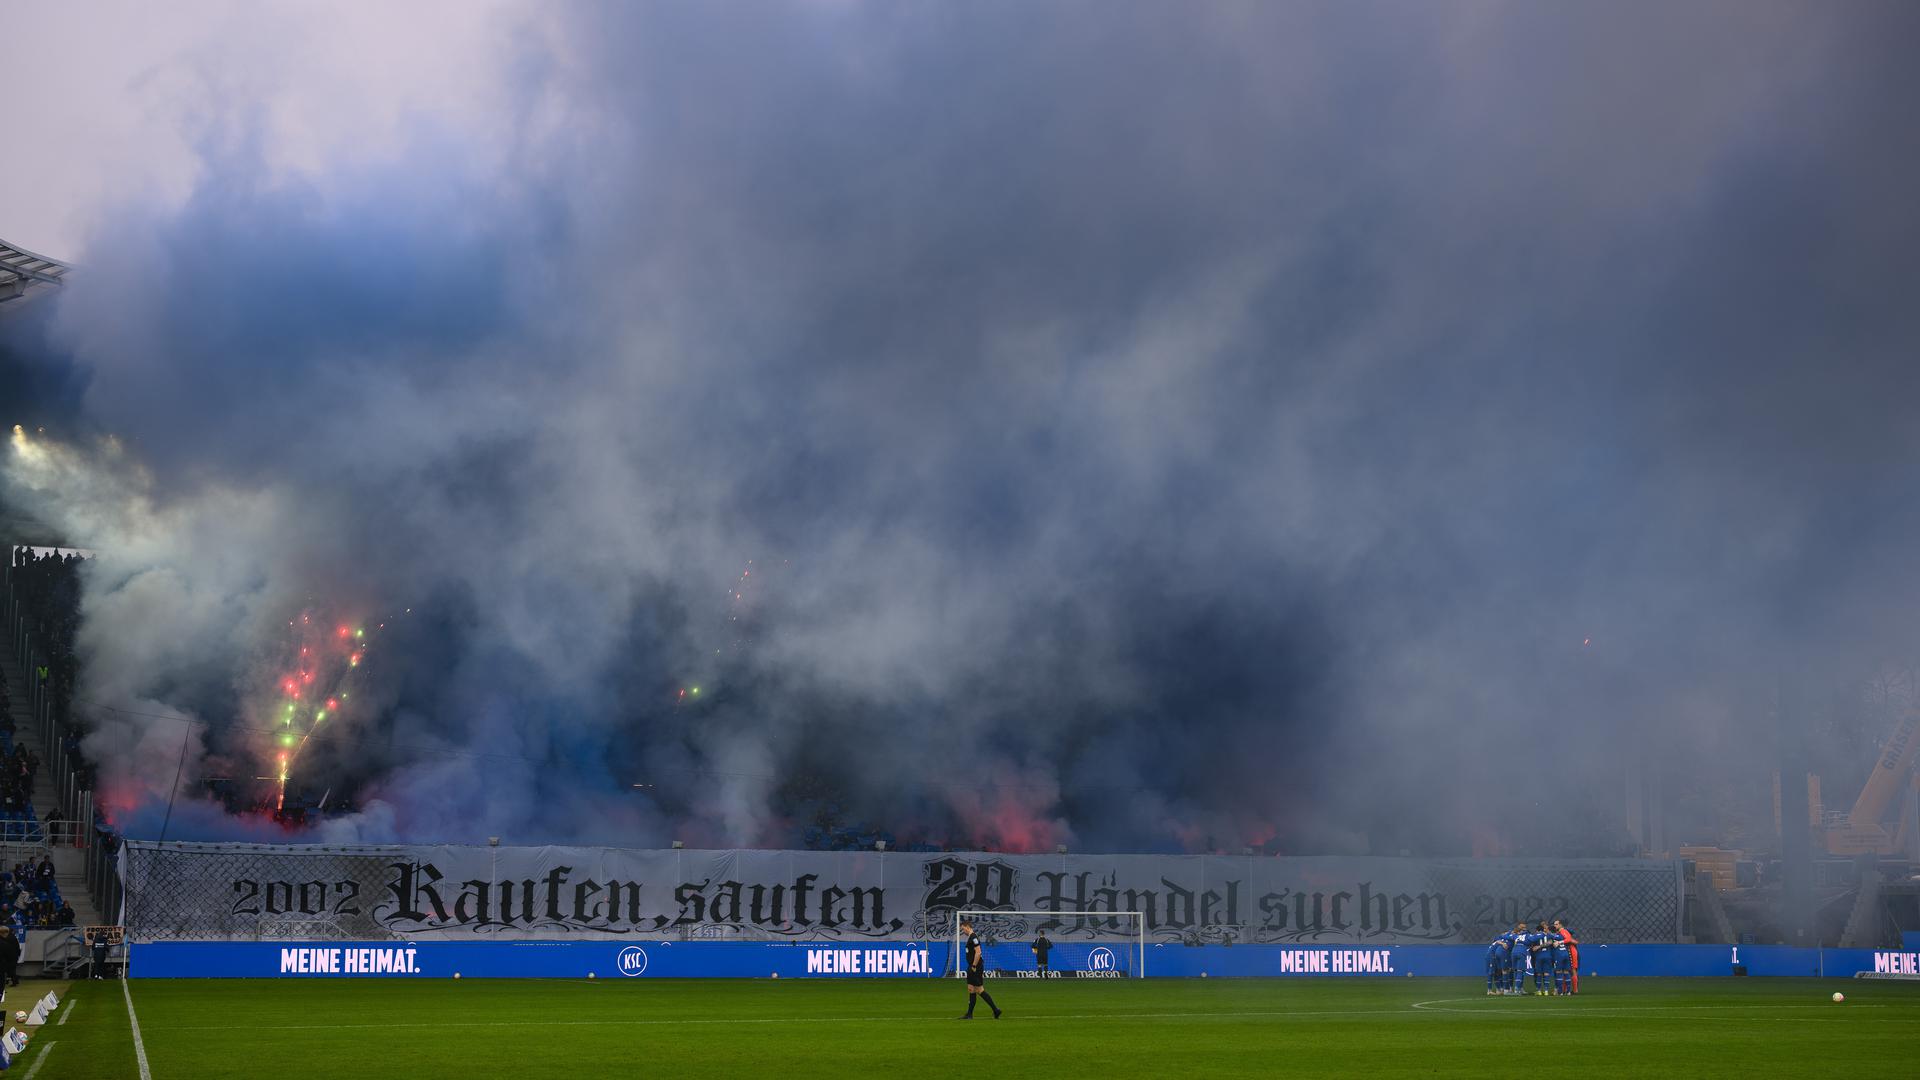 Viel Schall, viel Rauch: Die Partie des KSC gegen den FC St. Pauli konnte am Samstag nach einer Pyro-Aktion auf der Südtribüne wegen der Rauchentwicklung erst mit großer Verspätung angepfiffen werden. 